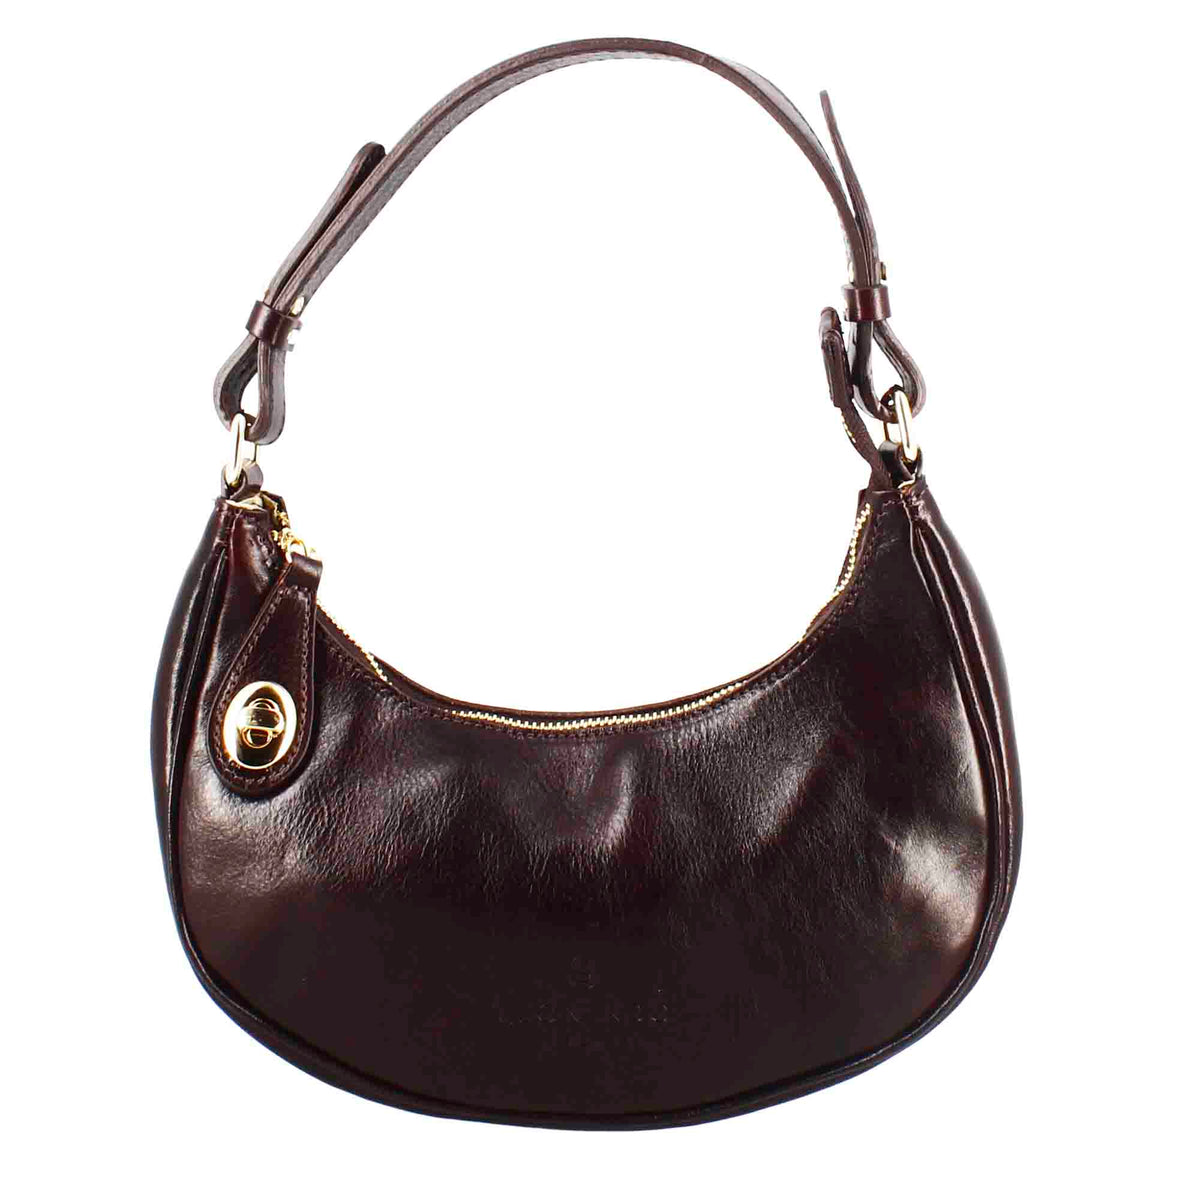 Jane shoulder bag in dark brown leather with removable shoulder strap